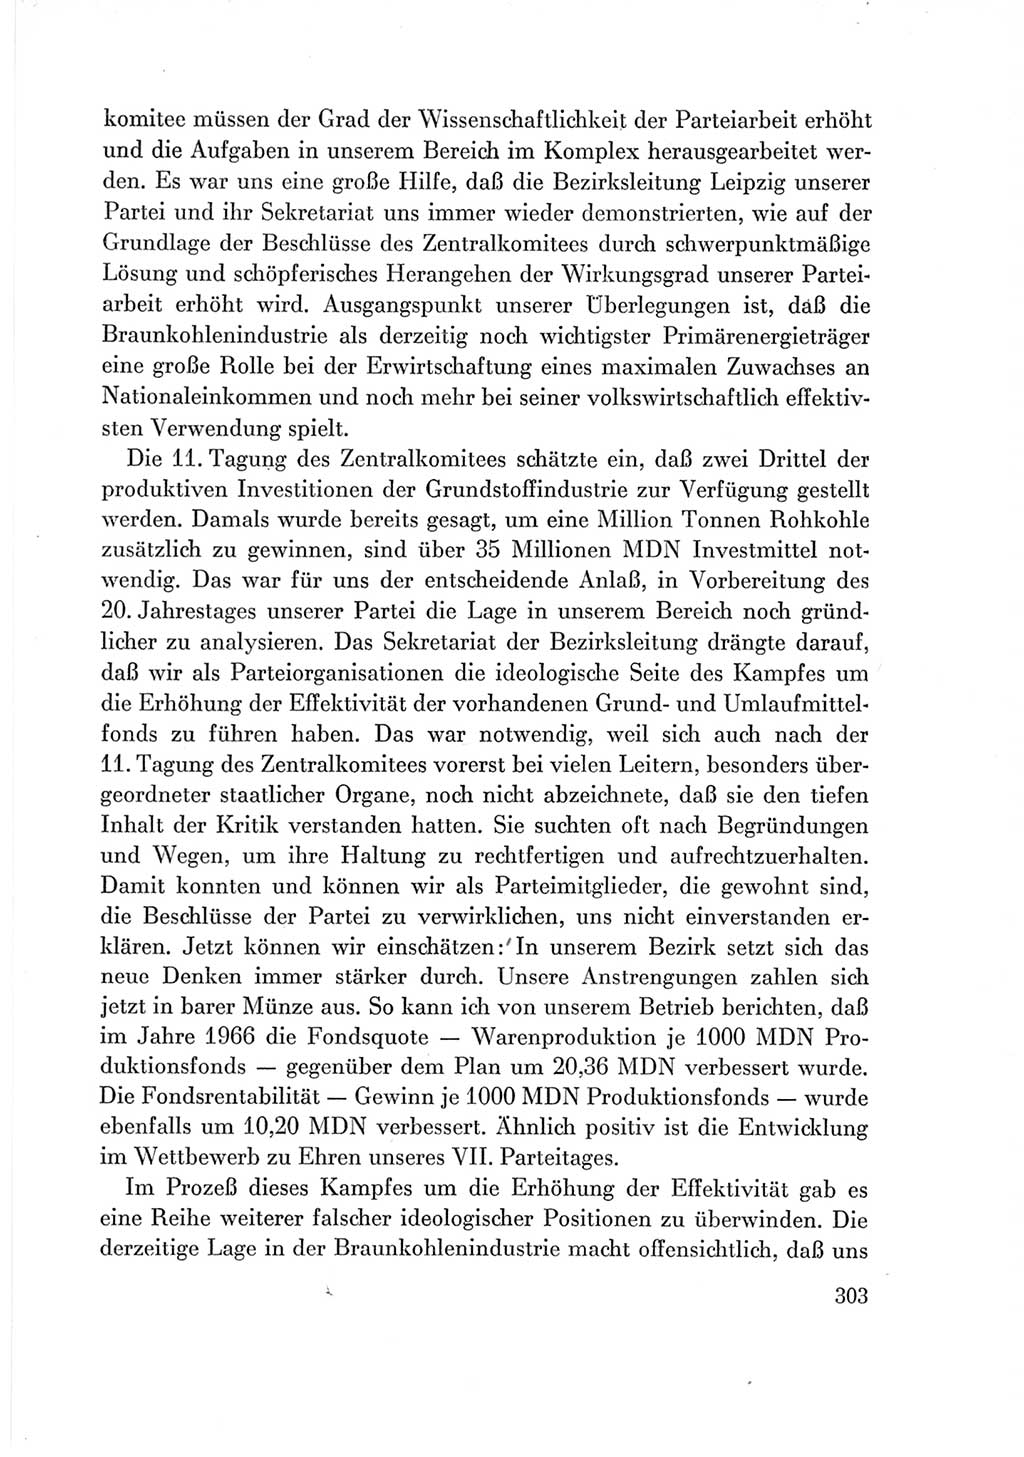 Protokoll der Verhandlungen des Ⅶ. Parteitages der Sozialistischen Einheitspartei Deutschlands (SED) [Deutsche Demokratische Republik (DDR)] 1967, Band Ⅲ, Seite 303 (Prot. Verh. Ⅶ. PT SED DDR 1967, Bd. Ⅲ, S. 303)